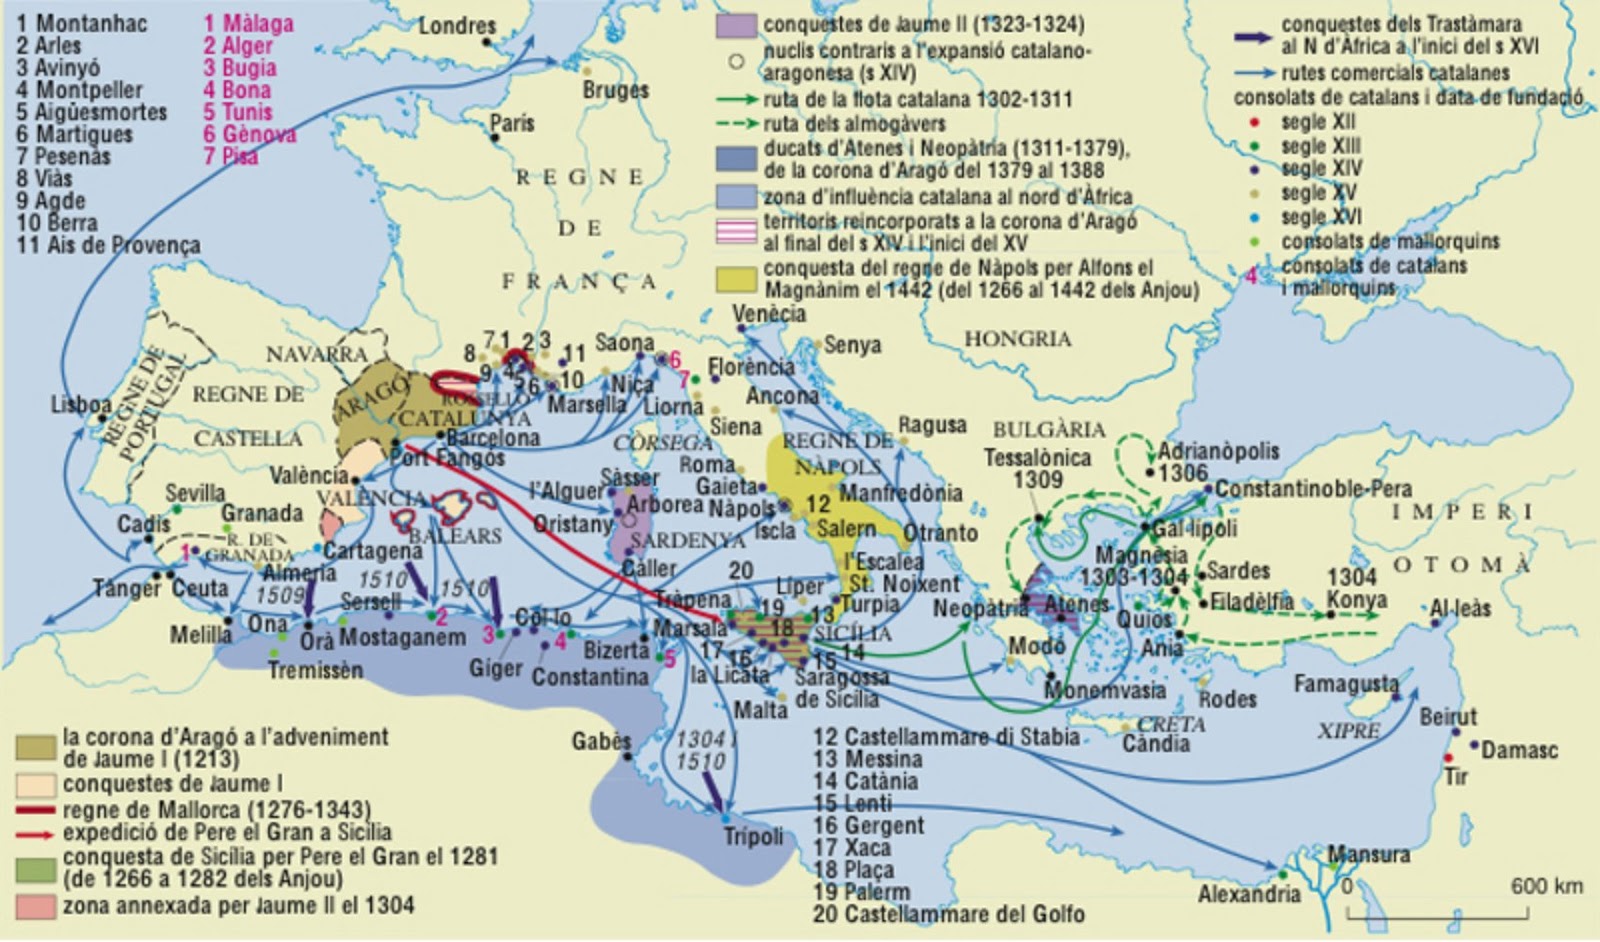 Mapa de la expansión medieval catalana en el Mediterráneo. Fuente Enciclopedia